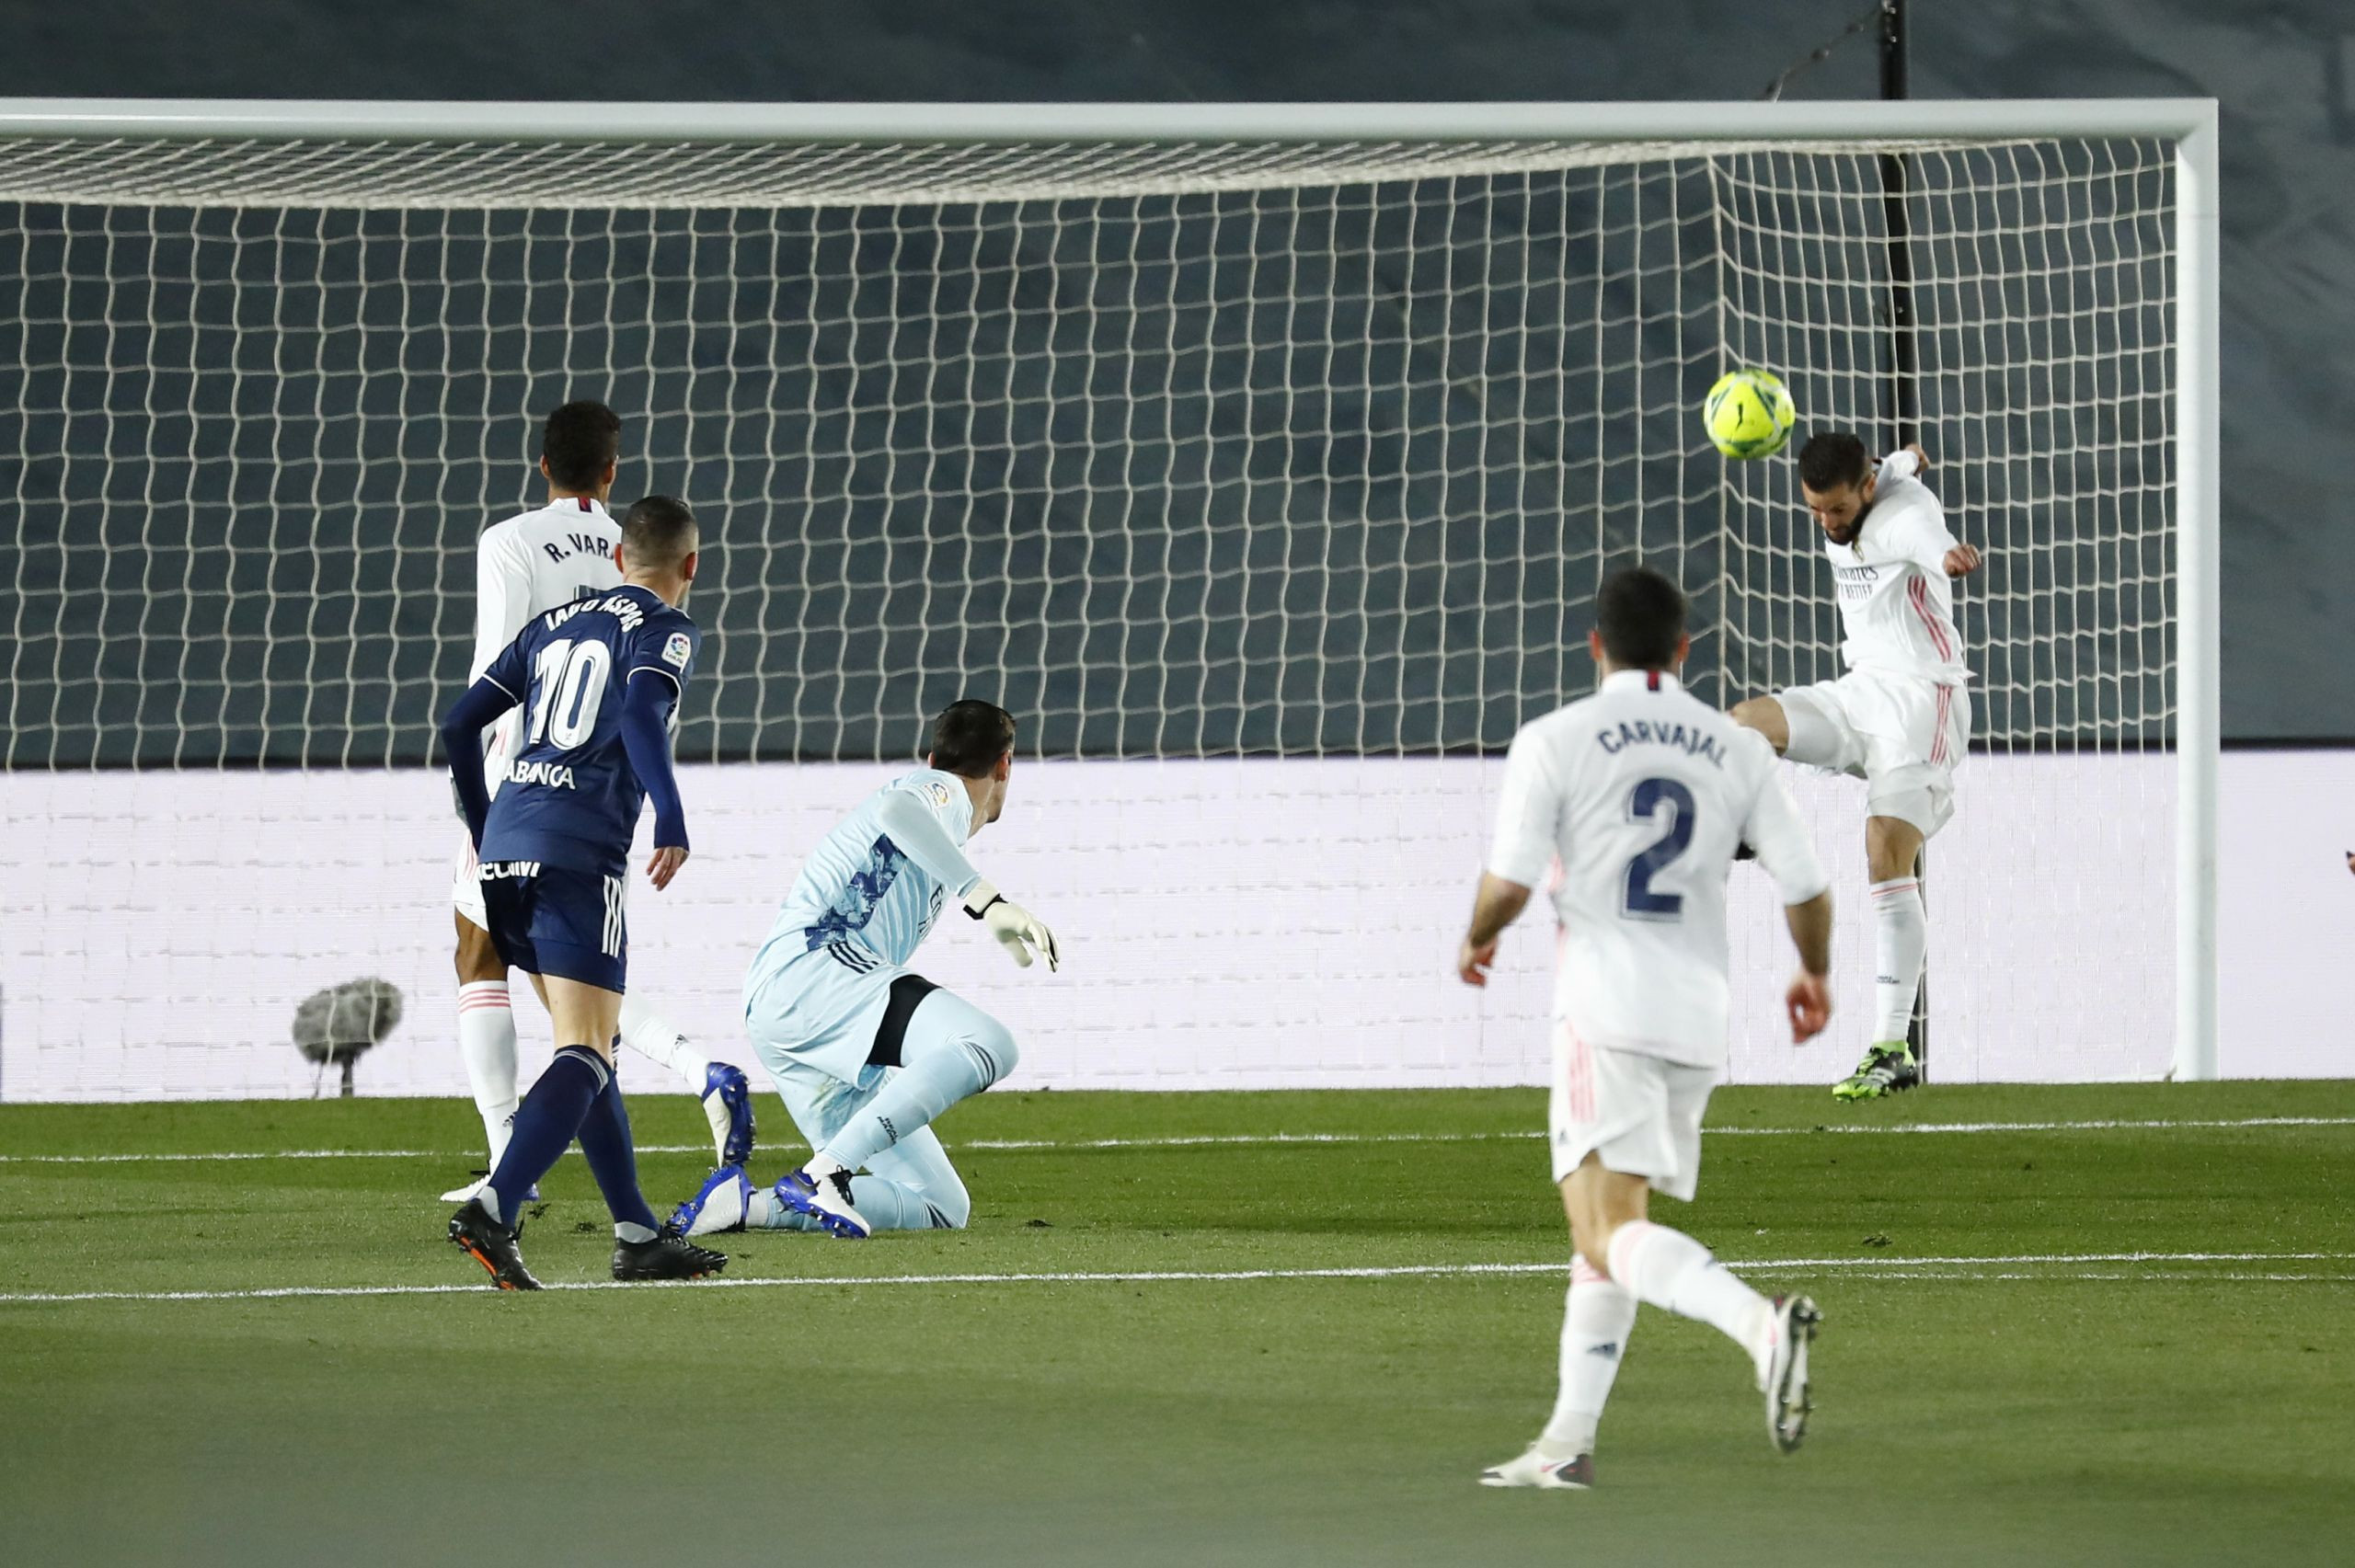 Nacho salva el primer remate del partido de Iago Aspas. En la jugada siguiente el Madrid se adelantaría y en la segunda parte, el defensa lesionaría al moañés.